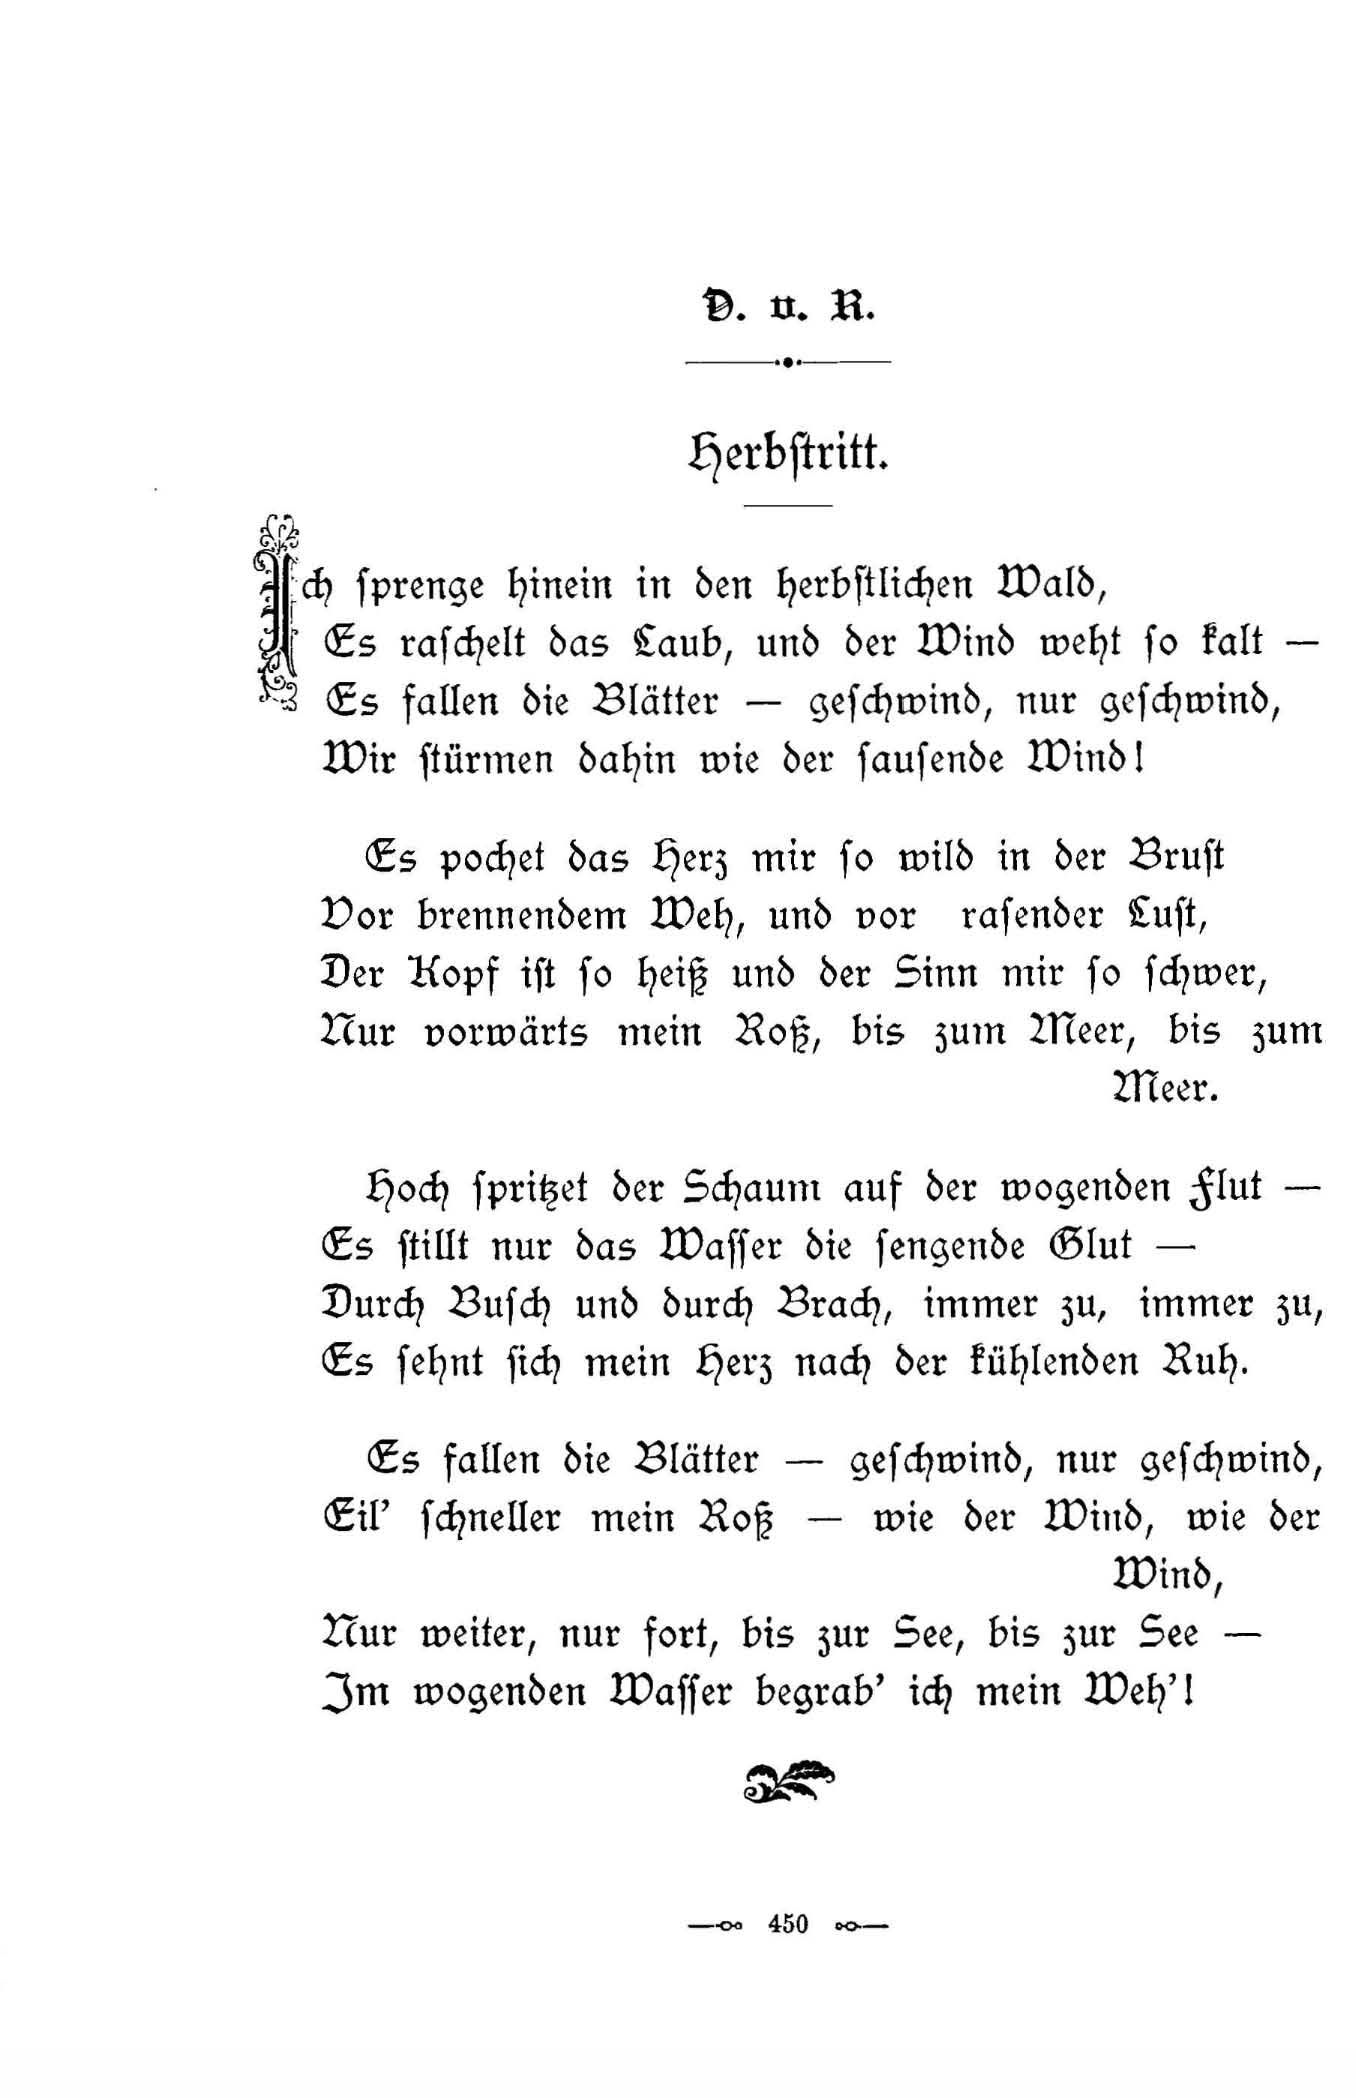 Herbstritt (1896) | 1. (450) Main body of text